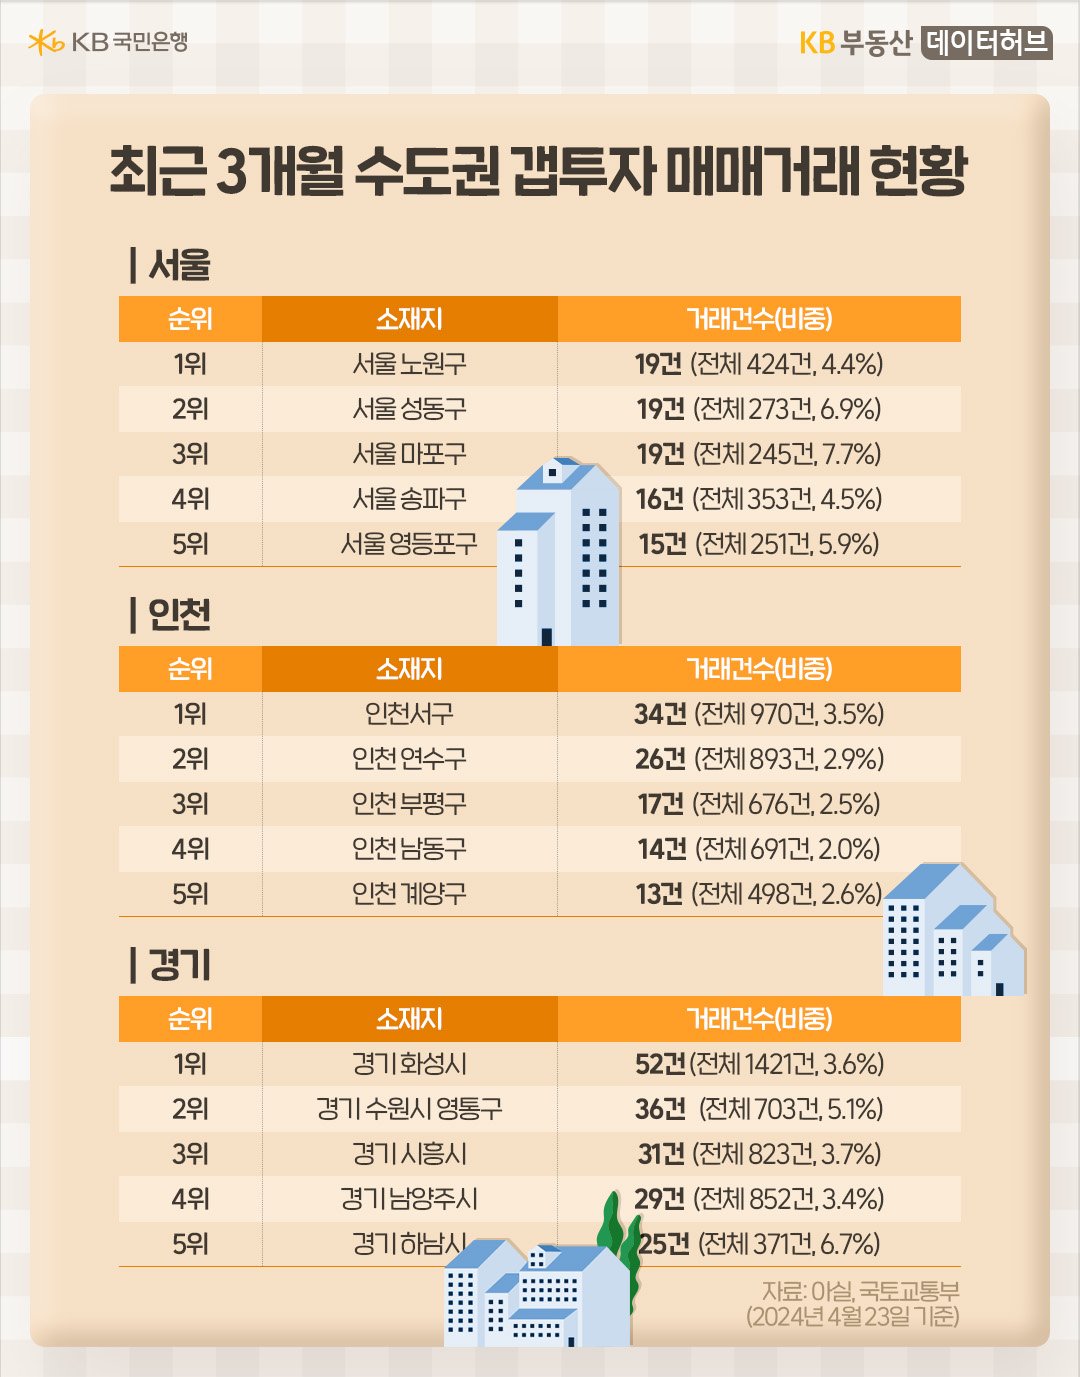 4월 23일 기준 '서울'에서 '갭투자' 매매가 가장 크게 증가한 지역은 노원구였습니다. 지난 2월 이후 이뤄진 424건의 아파트 매매 거래 중 4.4%인 19건이 갭투자인 내용 등 수도권 갭투자 내용이 담긴 표이다.